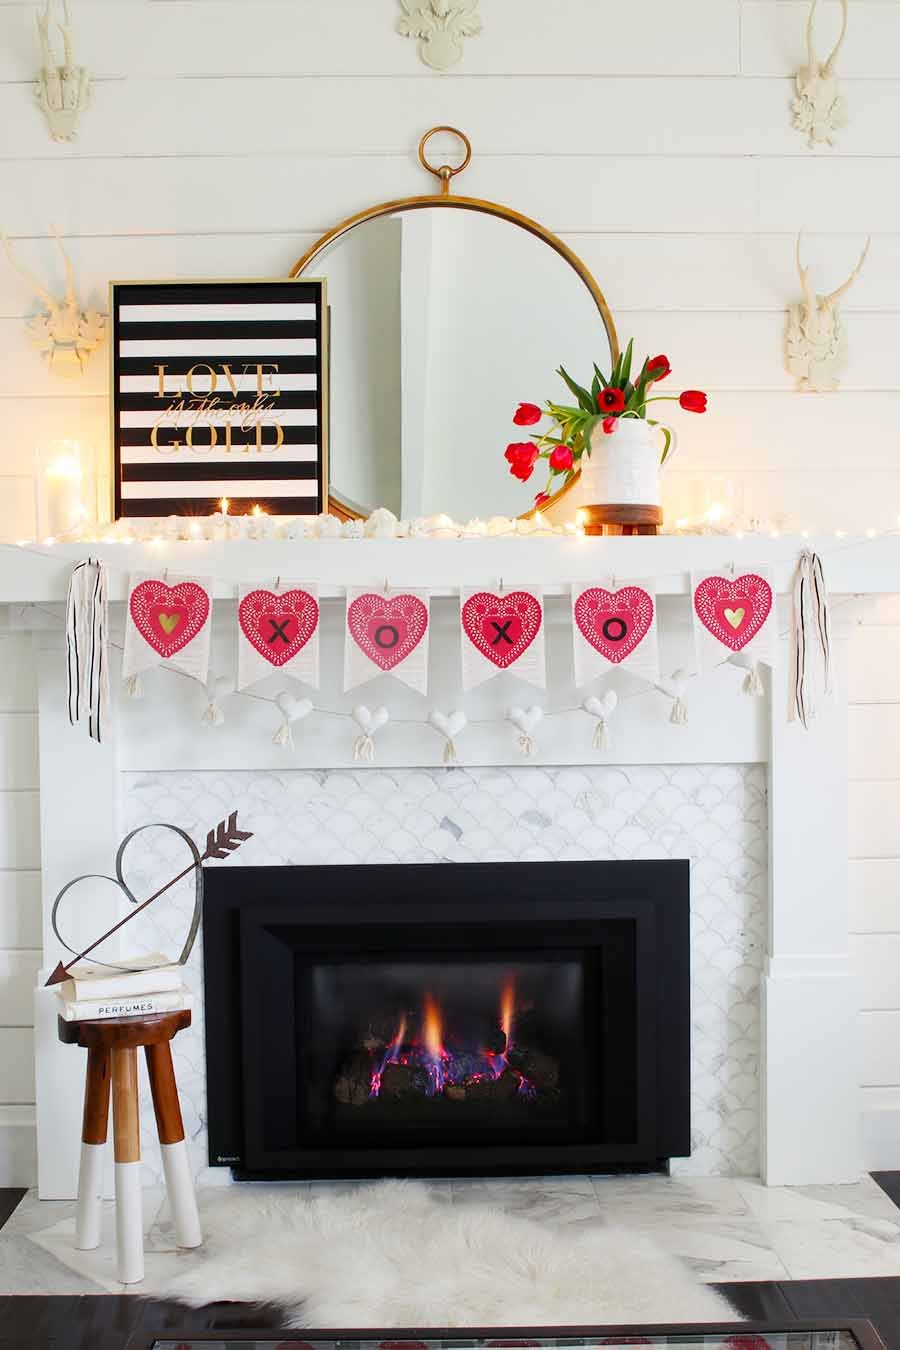 DIY fireplace decor ideas